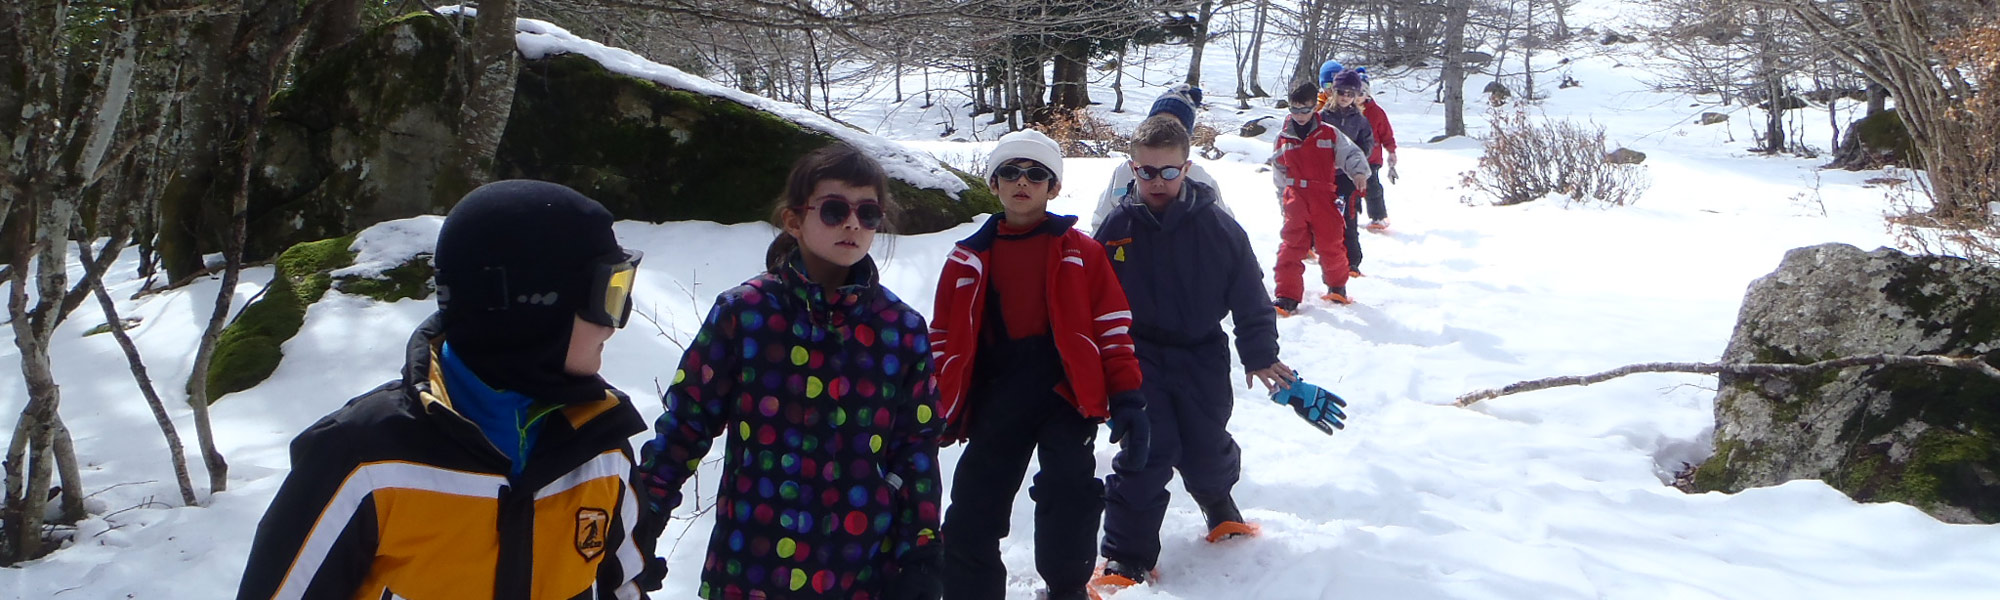 Raquettes a neige enfants - La Mongie - Pyrenees